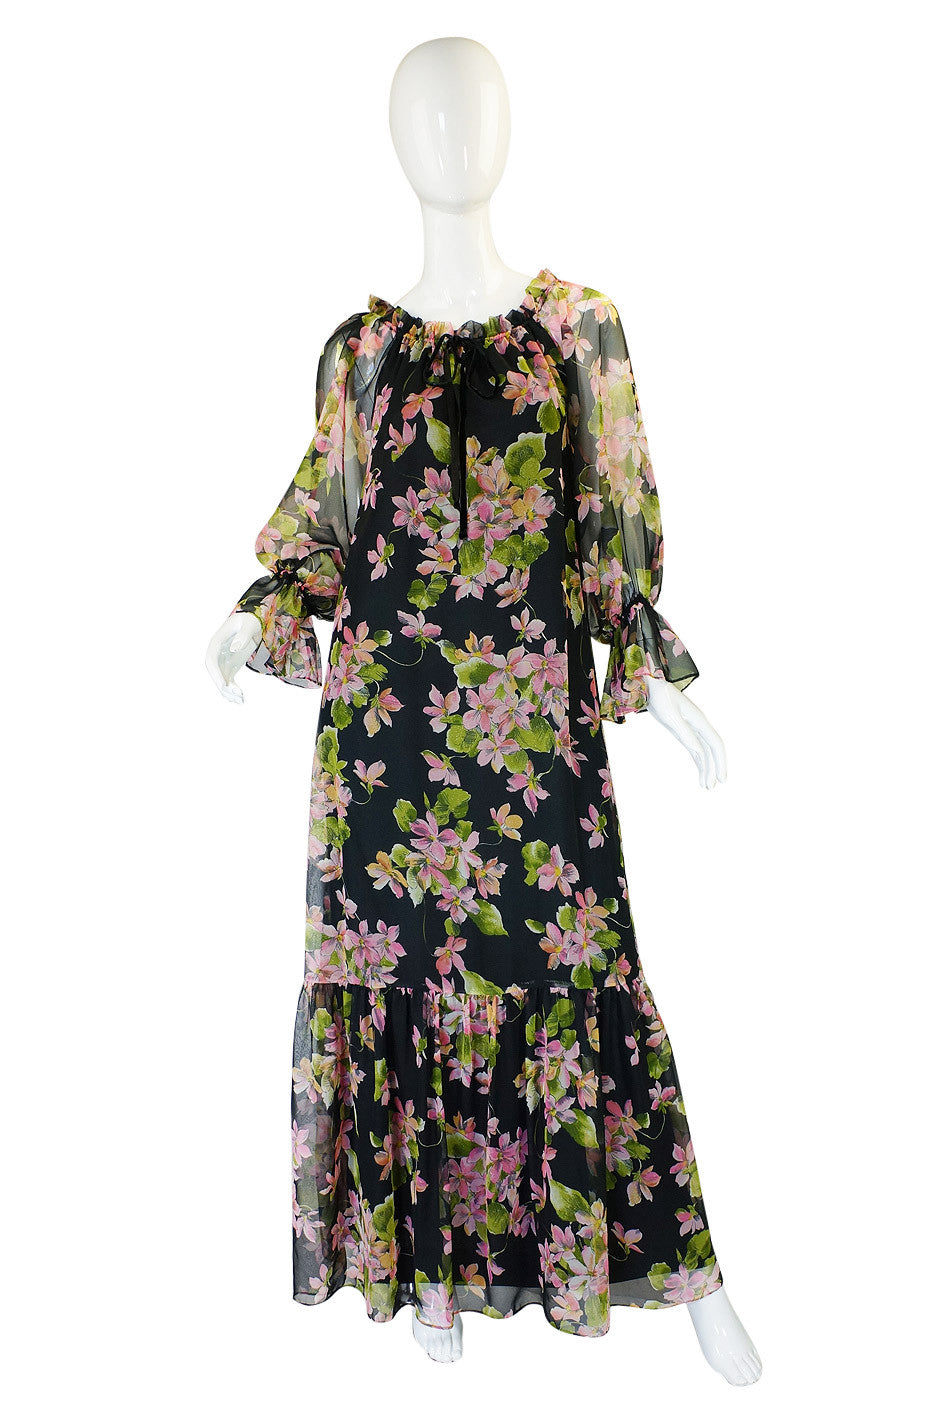 1970s Teal-Mignon Floral Caftan Dress – Shrimpton Couture